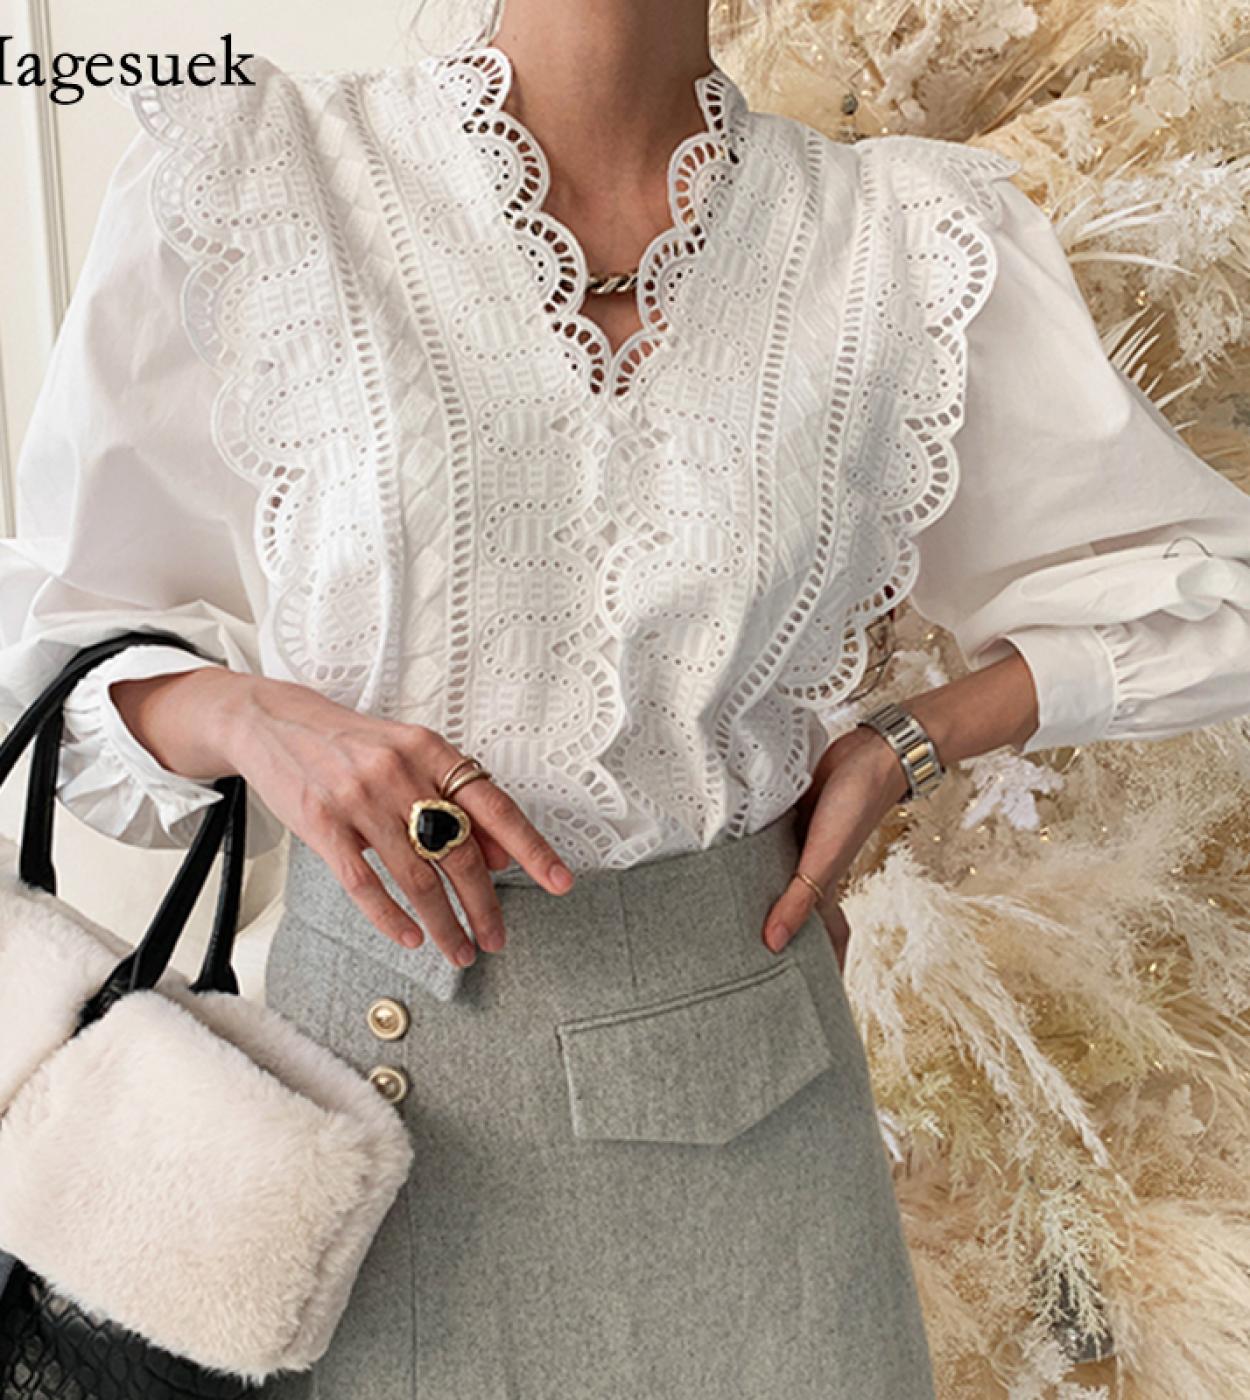 Vintage manga larga encaje mujer camisa Tops Blusas moda elegante cuello en V blusa de algodón blanco mujeres ahueca hacia fuera